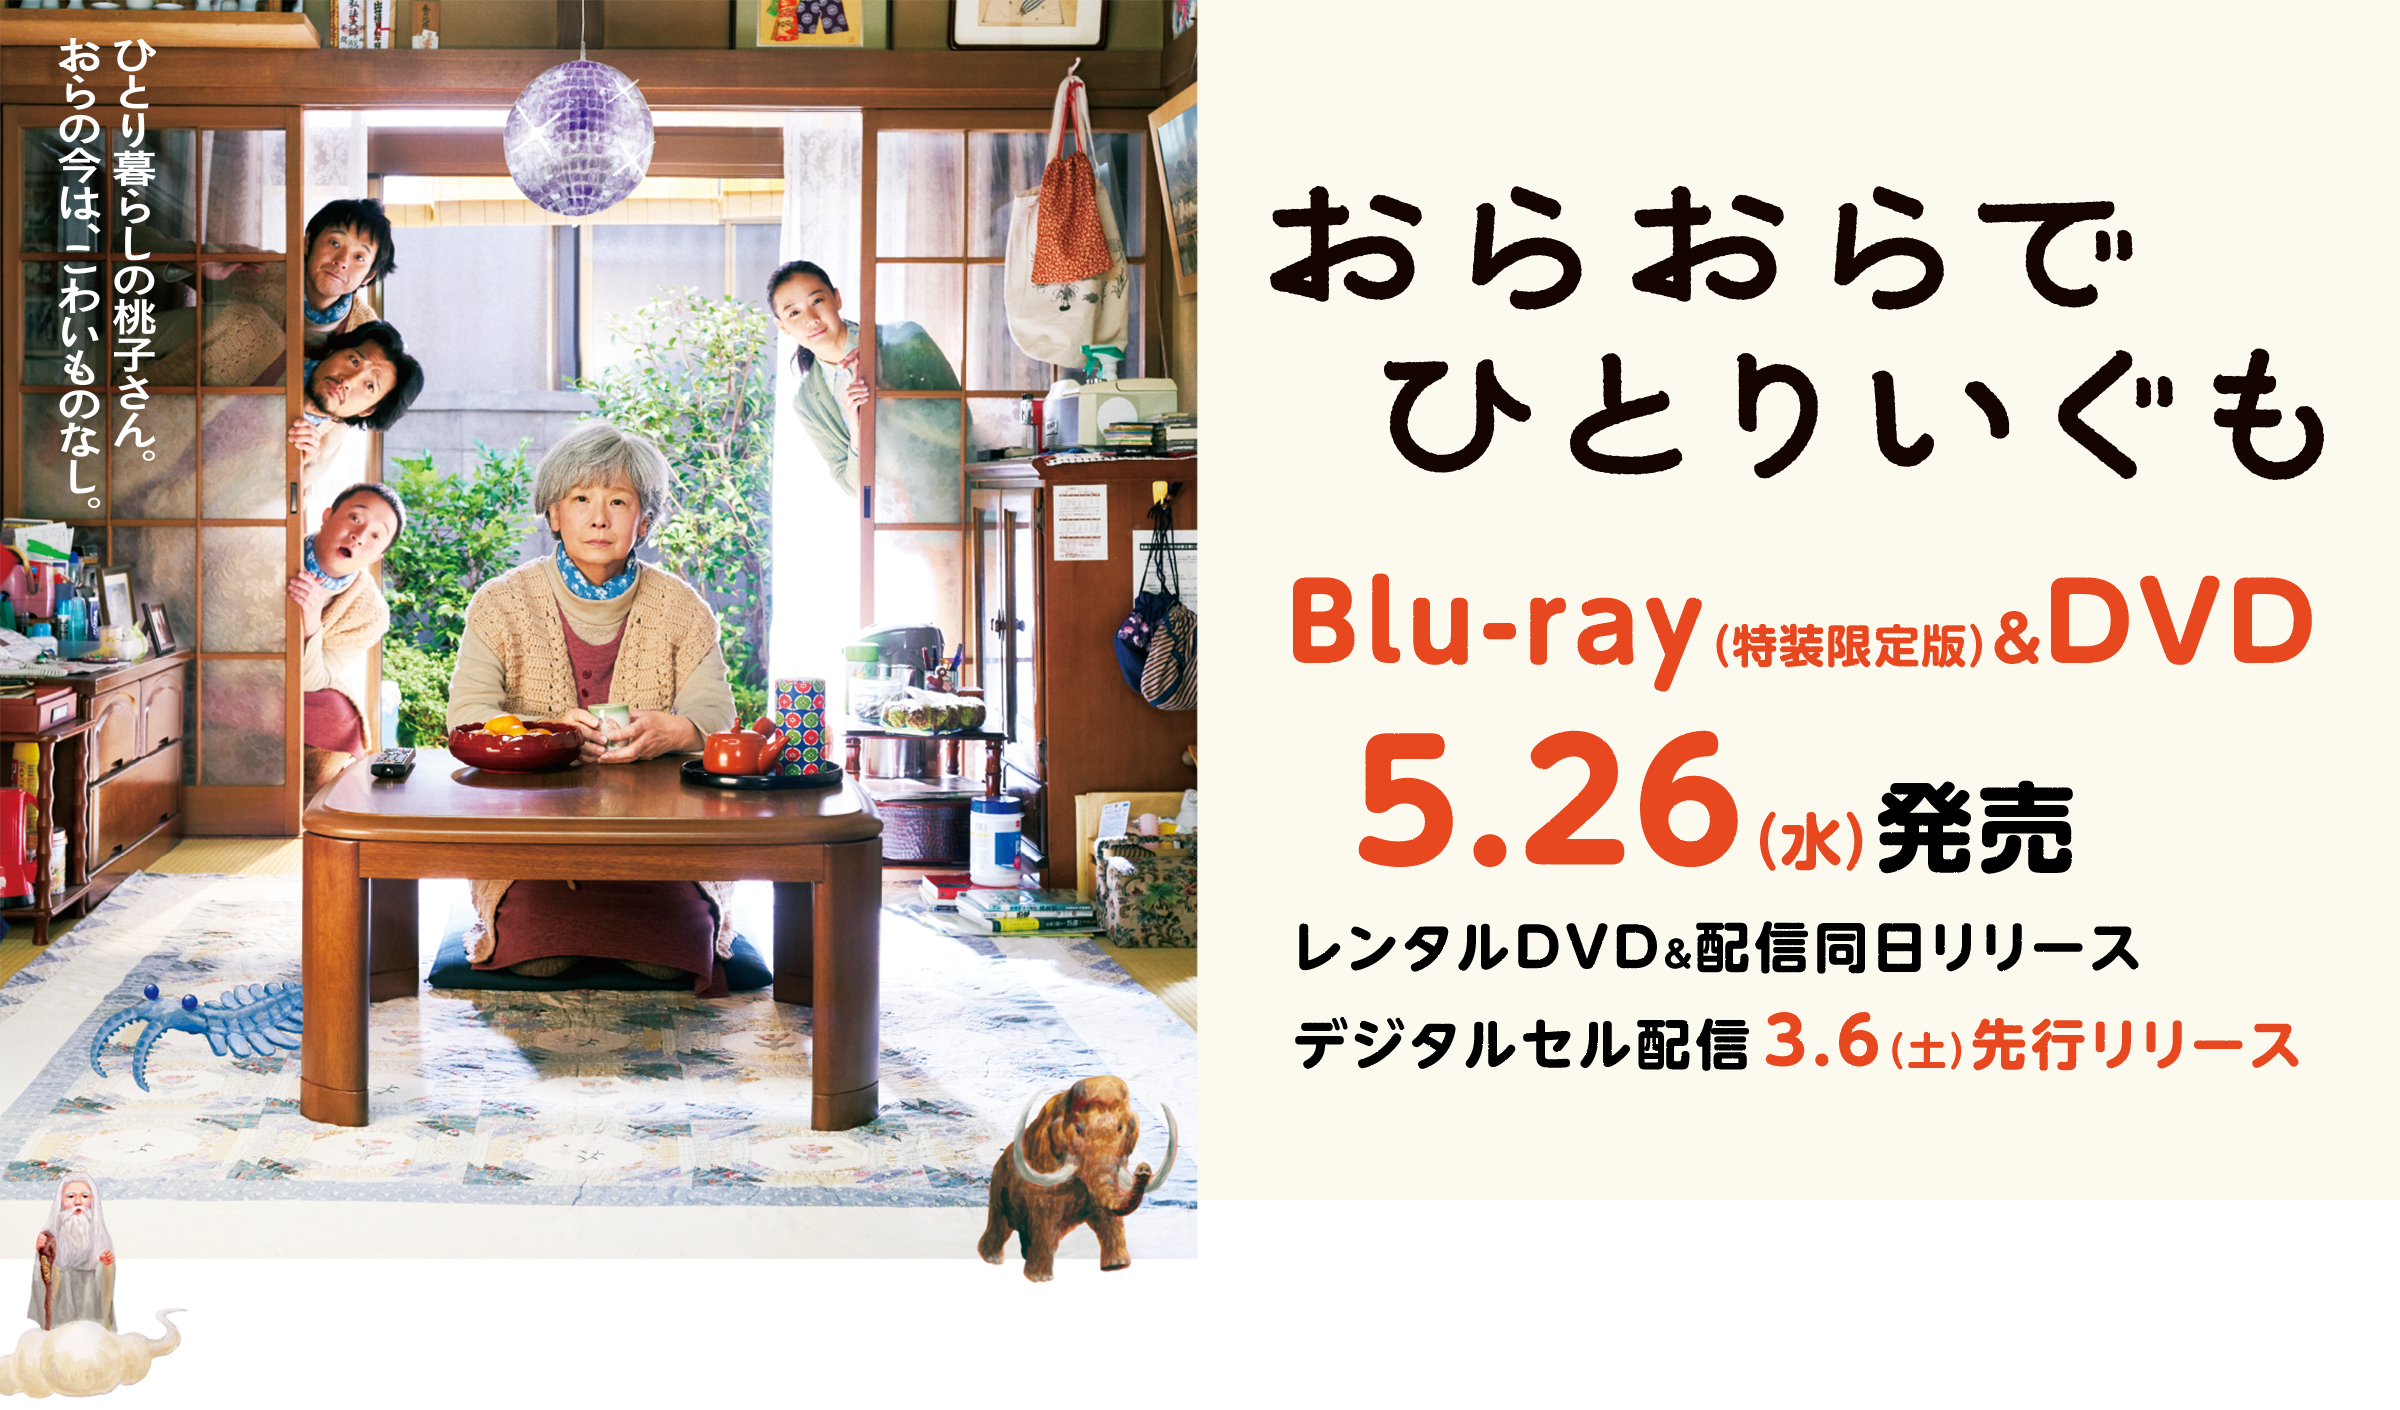 おらおらでひとりいぐも Blu-ray(特装限定版)&DVD5.26(水)発売